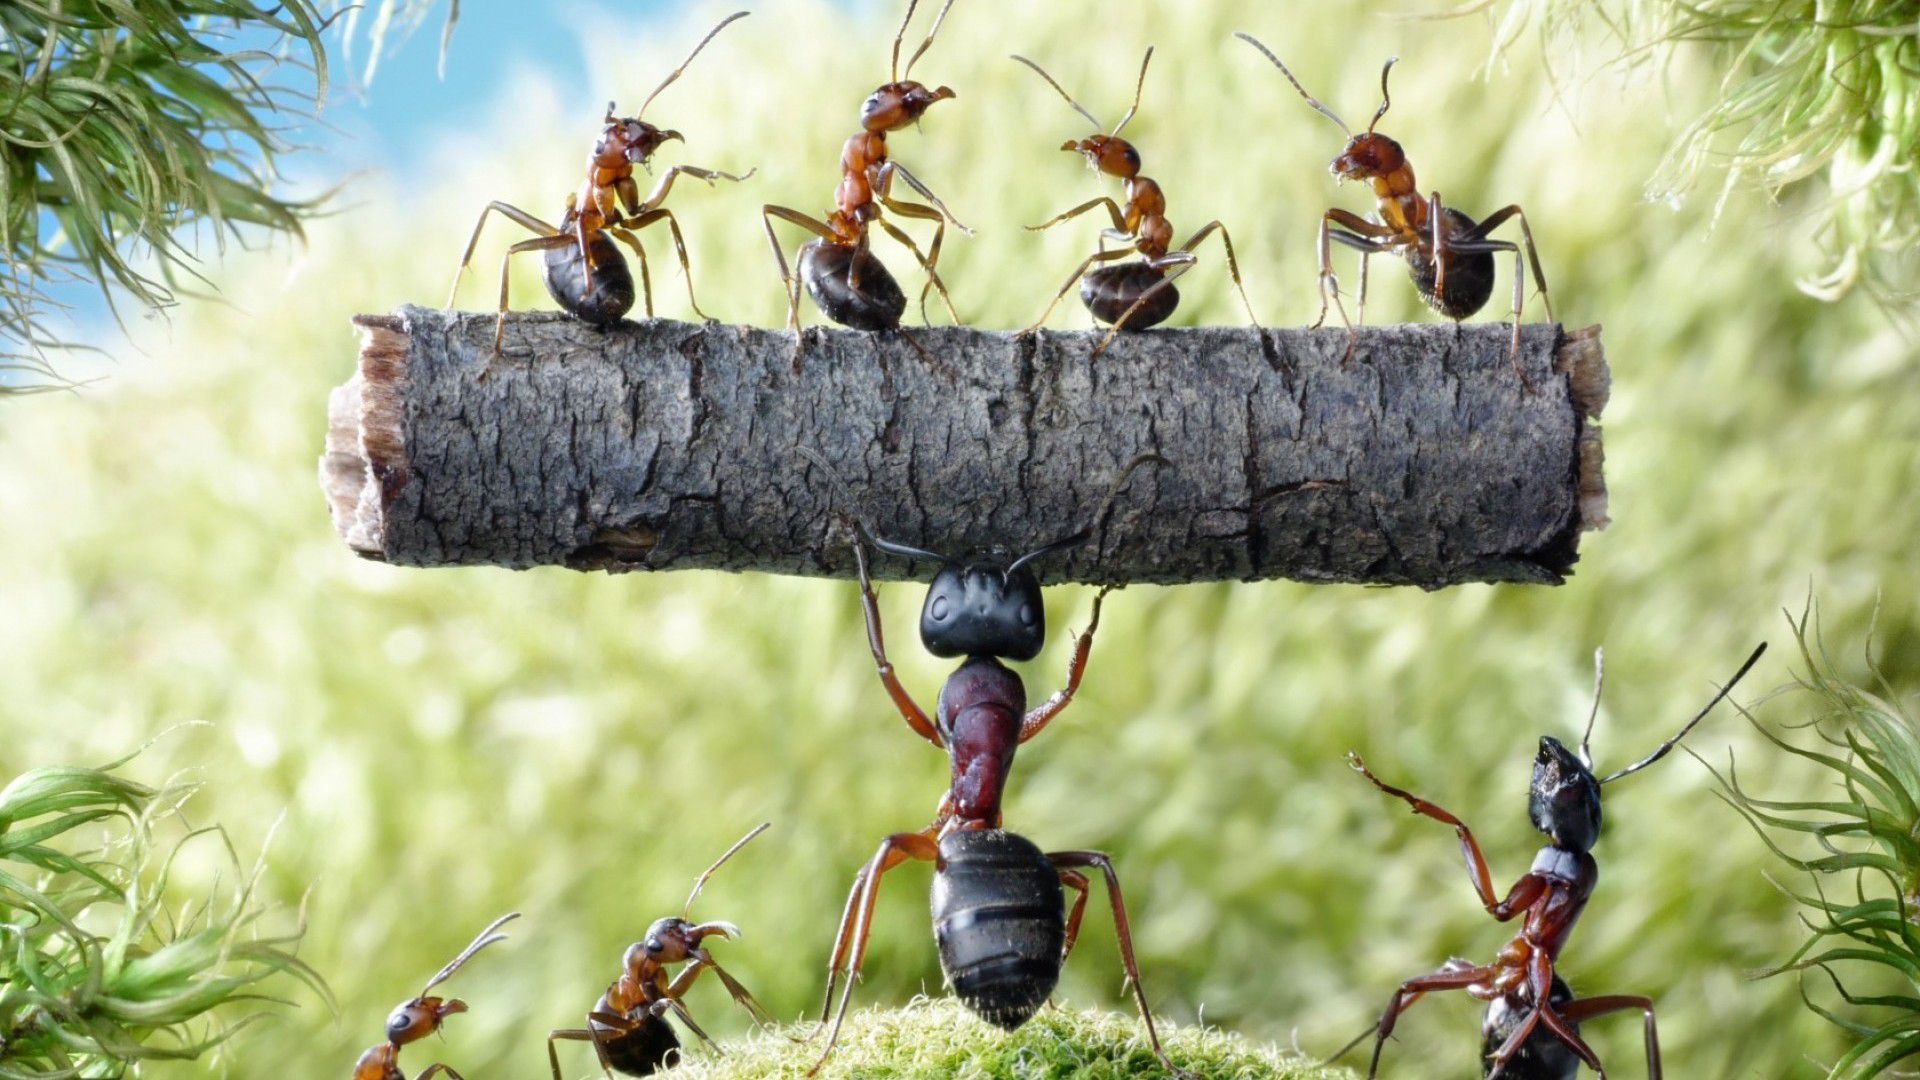 Doğru Büyüklükte Olmak Üzerine... (İnsan Boyundaki Karınca, Dev Bir Kayayı  Kaldırabilir miydi?) - Evrim Ağacı